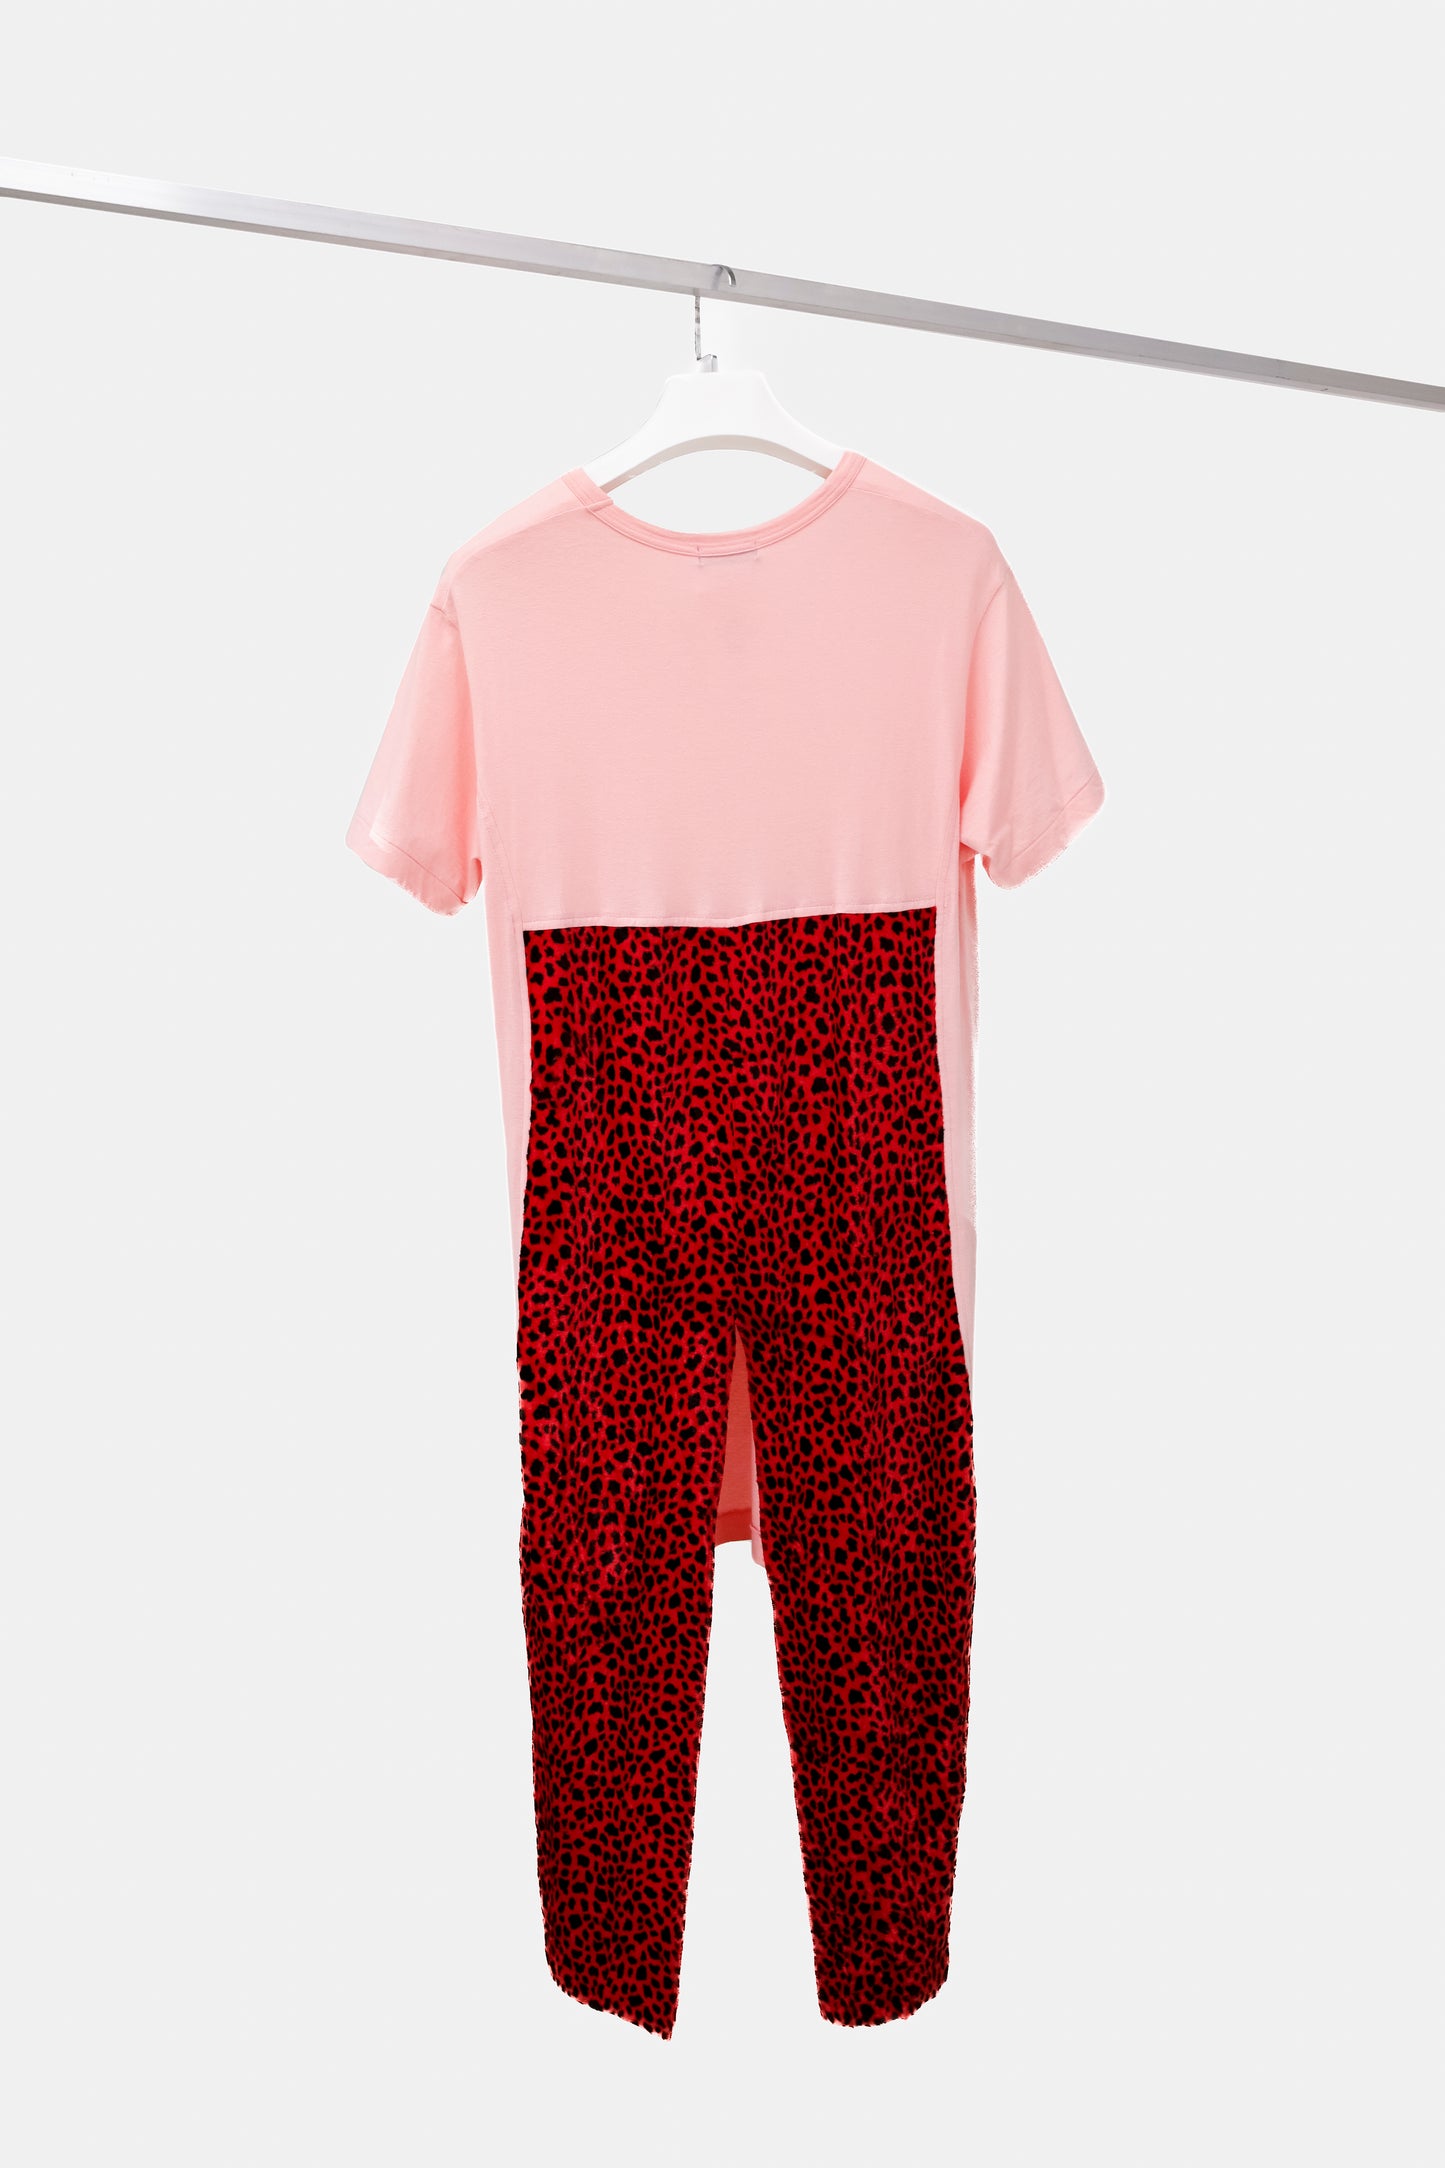 Comme des Garçons Homme Plus Men's Pink Leopard T-Shirt